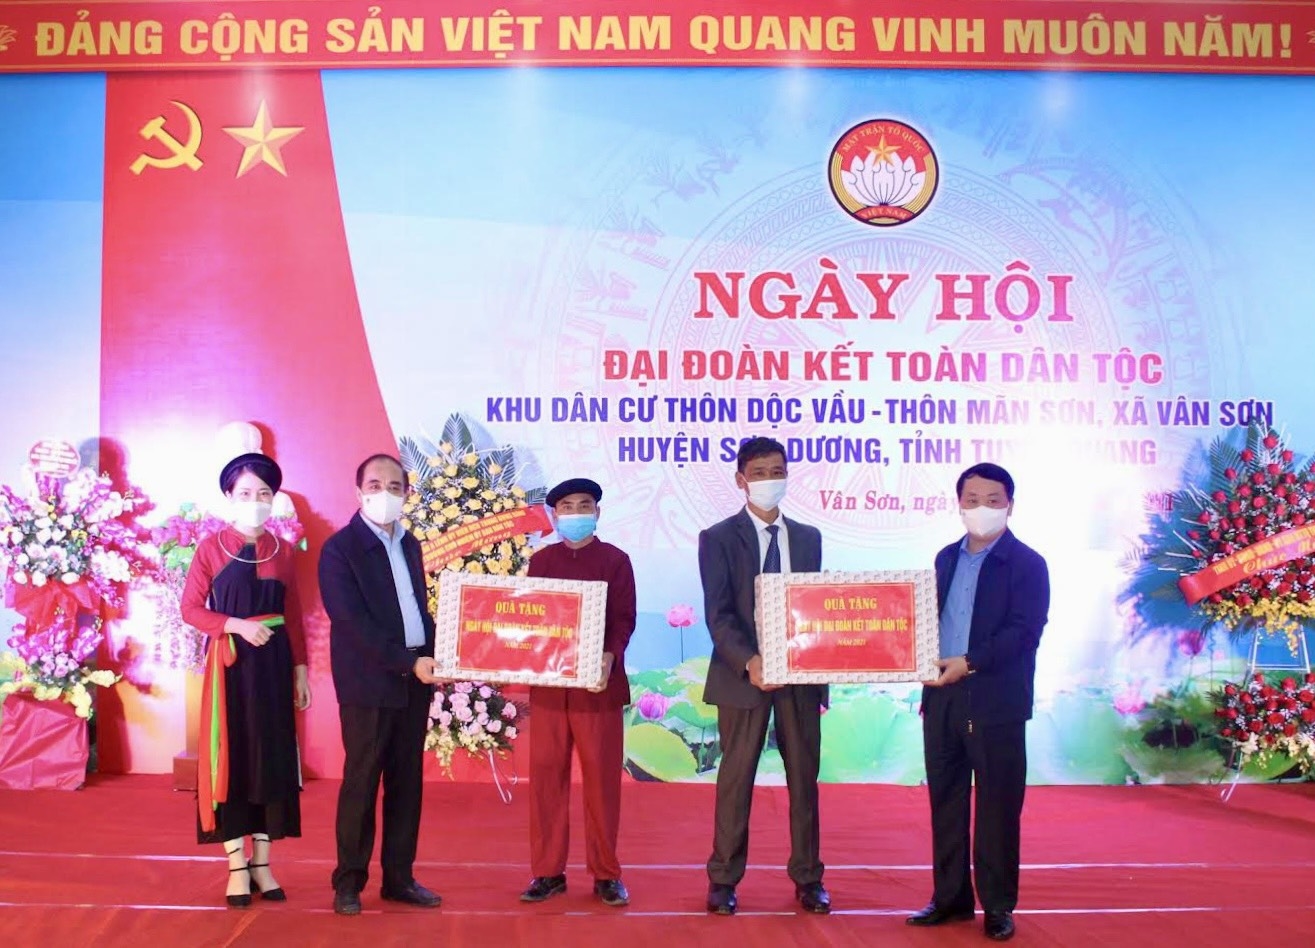 Bộ trưởng, Chủ nhiệm Uỷ ban Dân tộc Hầu A Lềnh và Bí thư Tỉnh ủy Tuyên Quang Chẩu Văn Lâm trao tặng quà cho hai thôn Dộc Vầu và Mãn Sơn